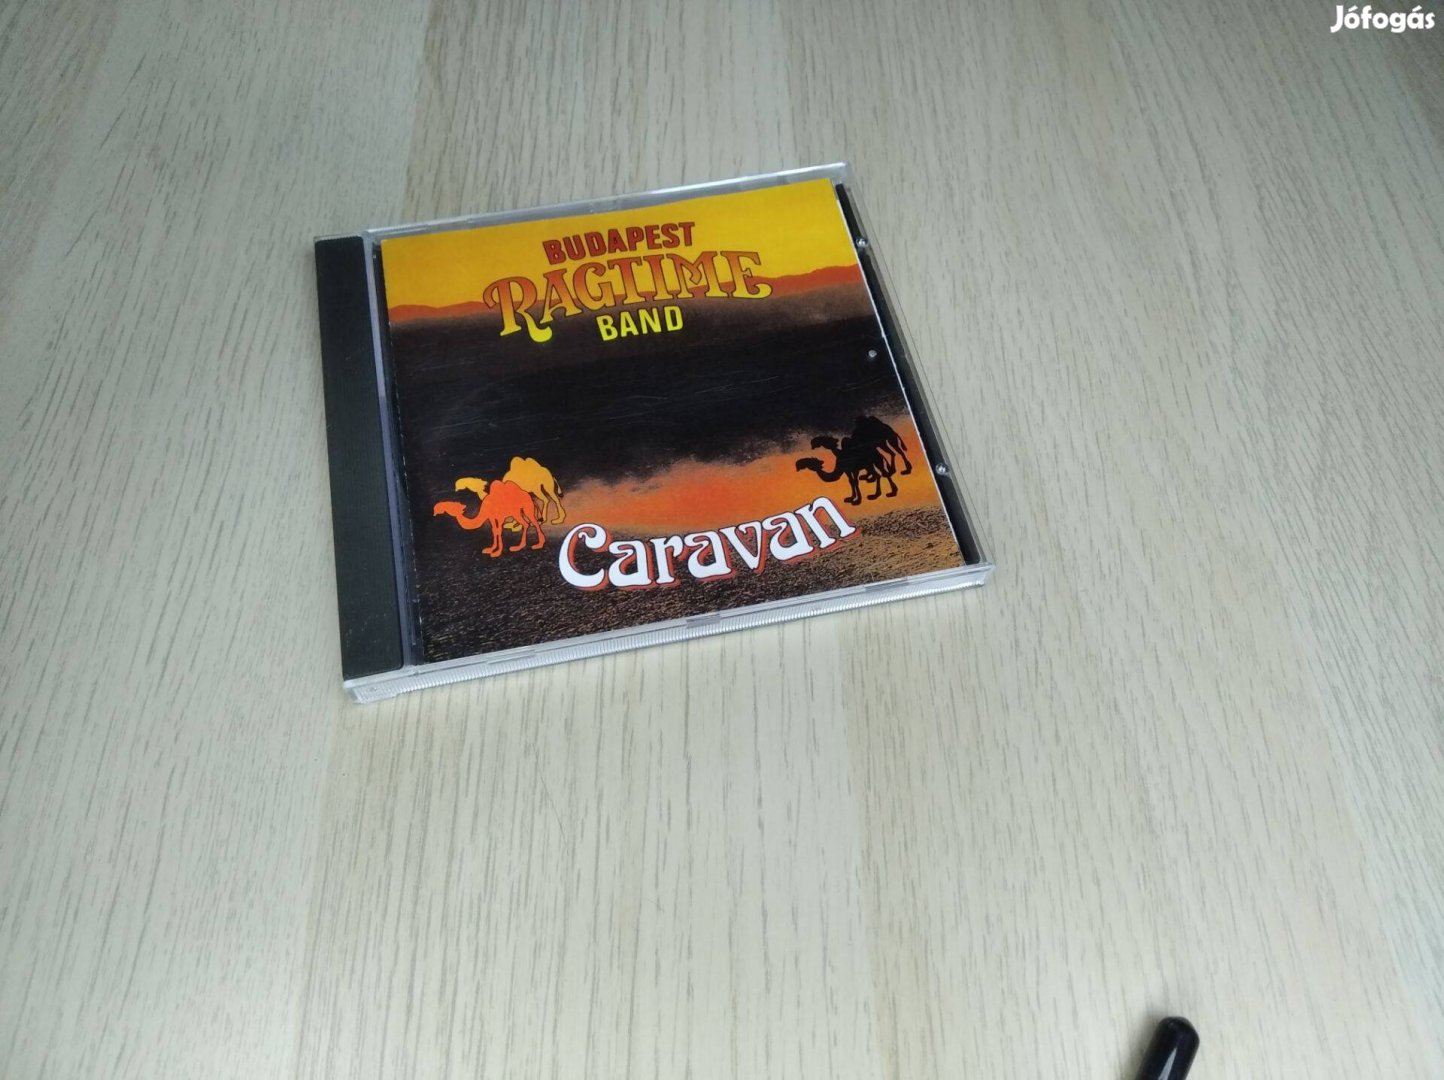 Budapest Ragtime Band - Caravan / CD